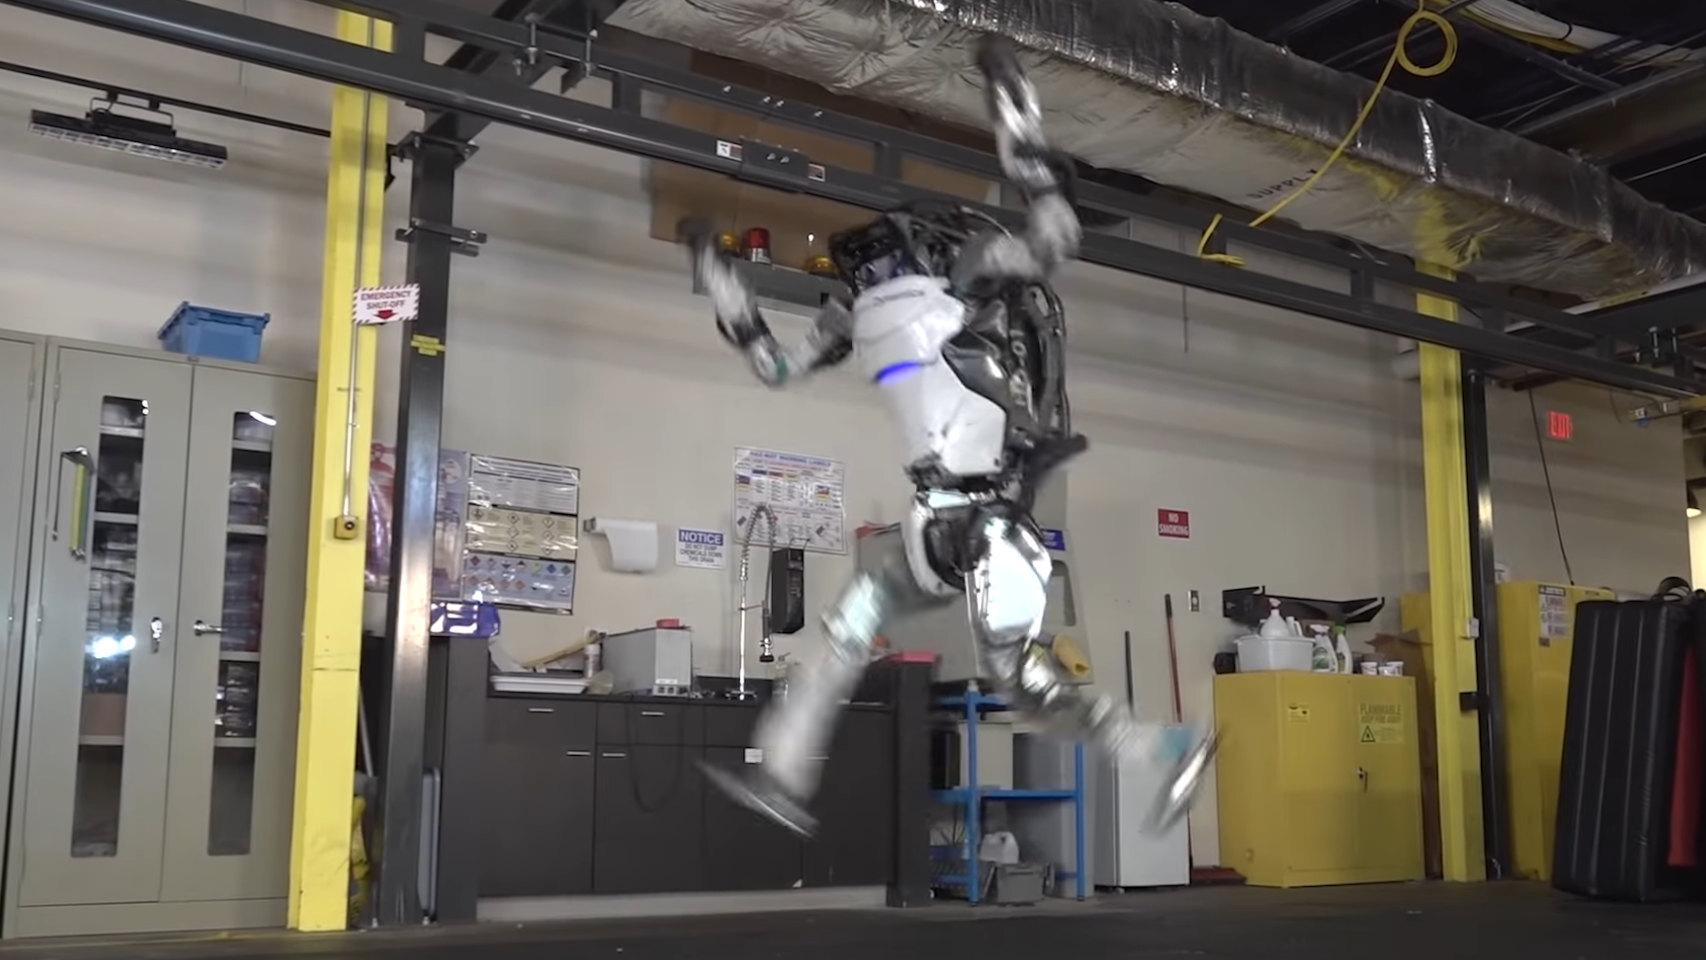 No es una película: este vídeo de robots haciendo gimnasia es real